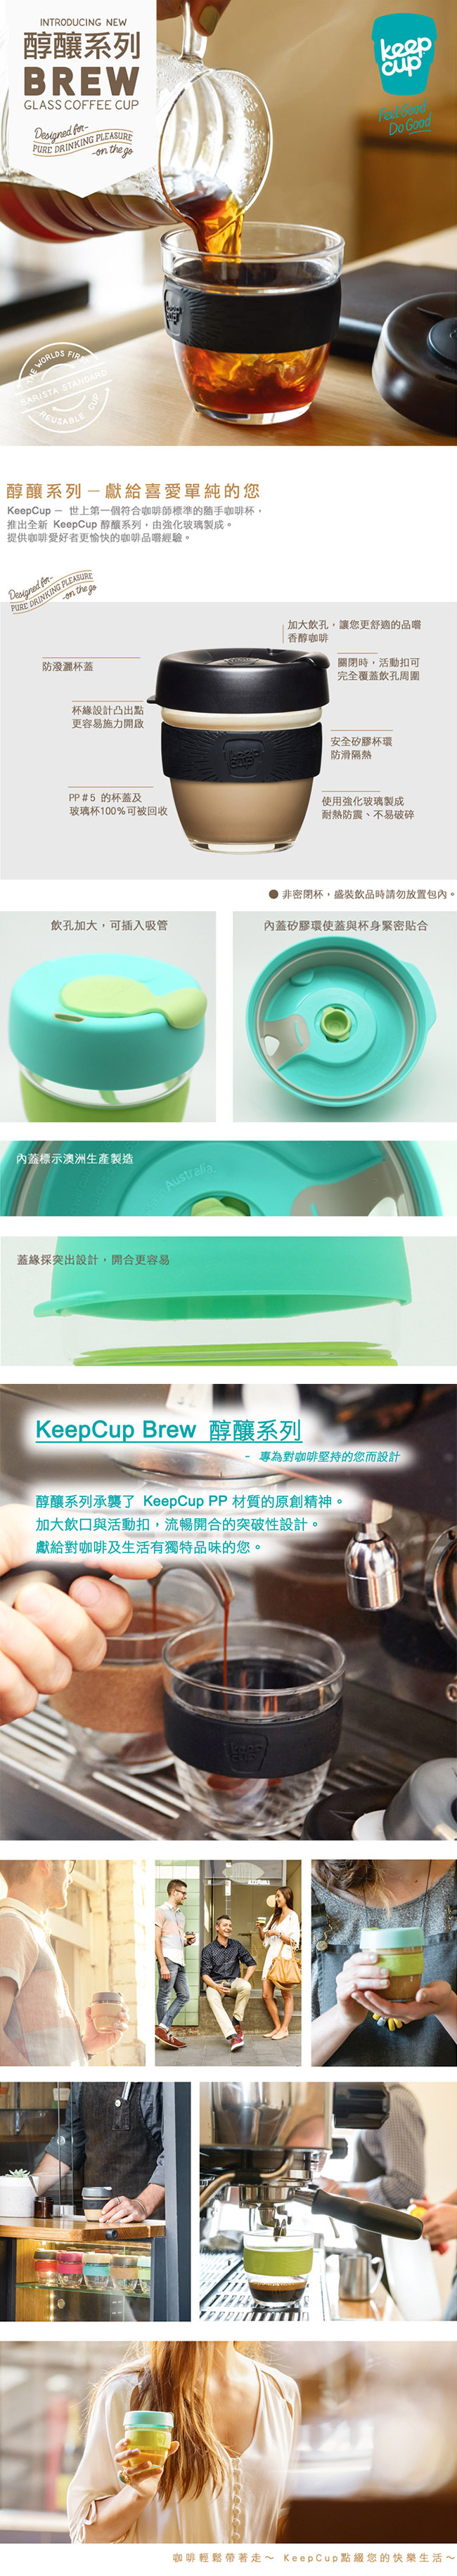 KeepCup 隨手咖啡杯 醇釀系列 M 深焙